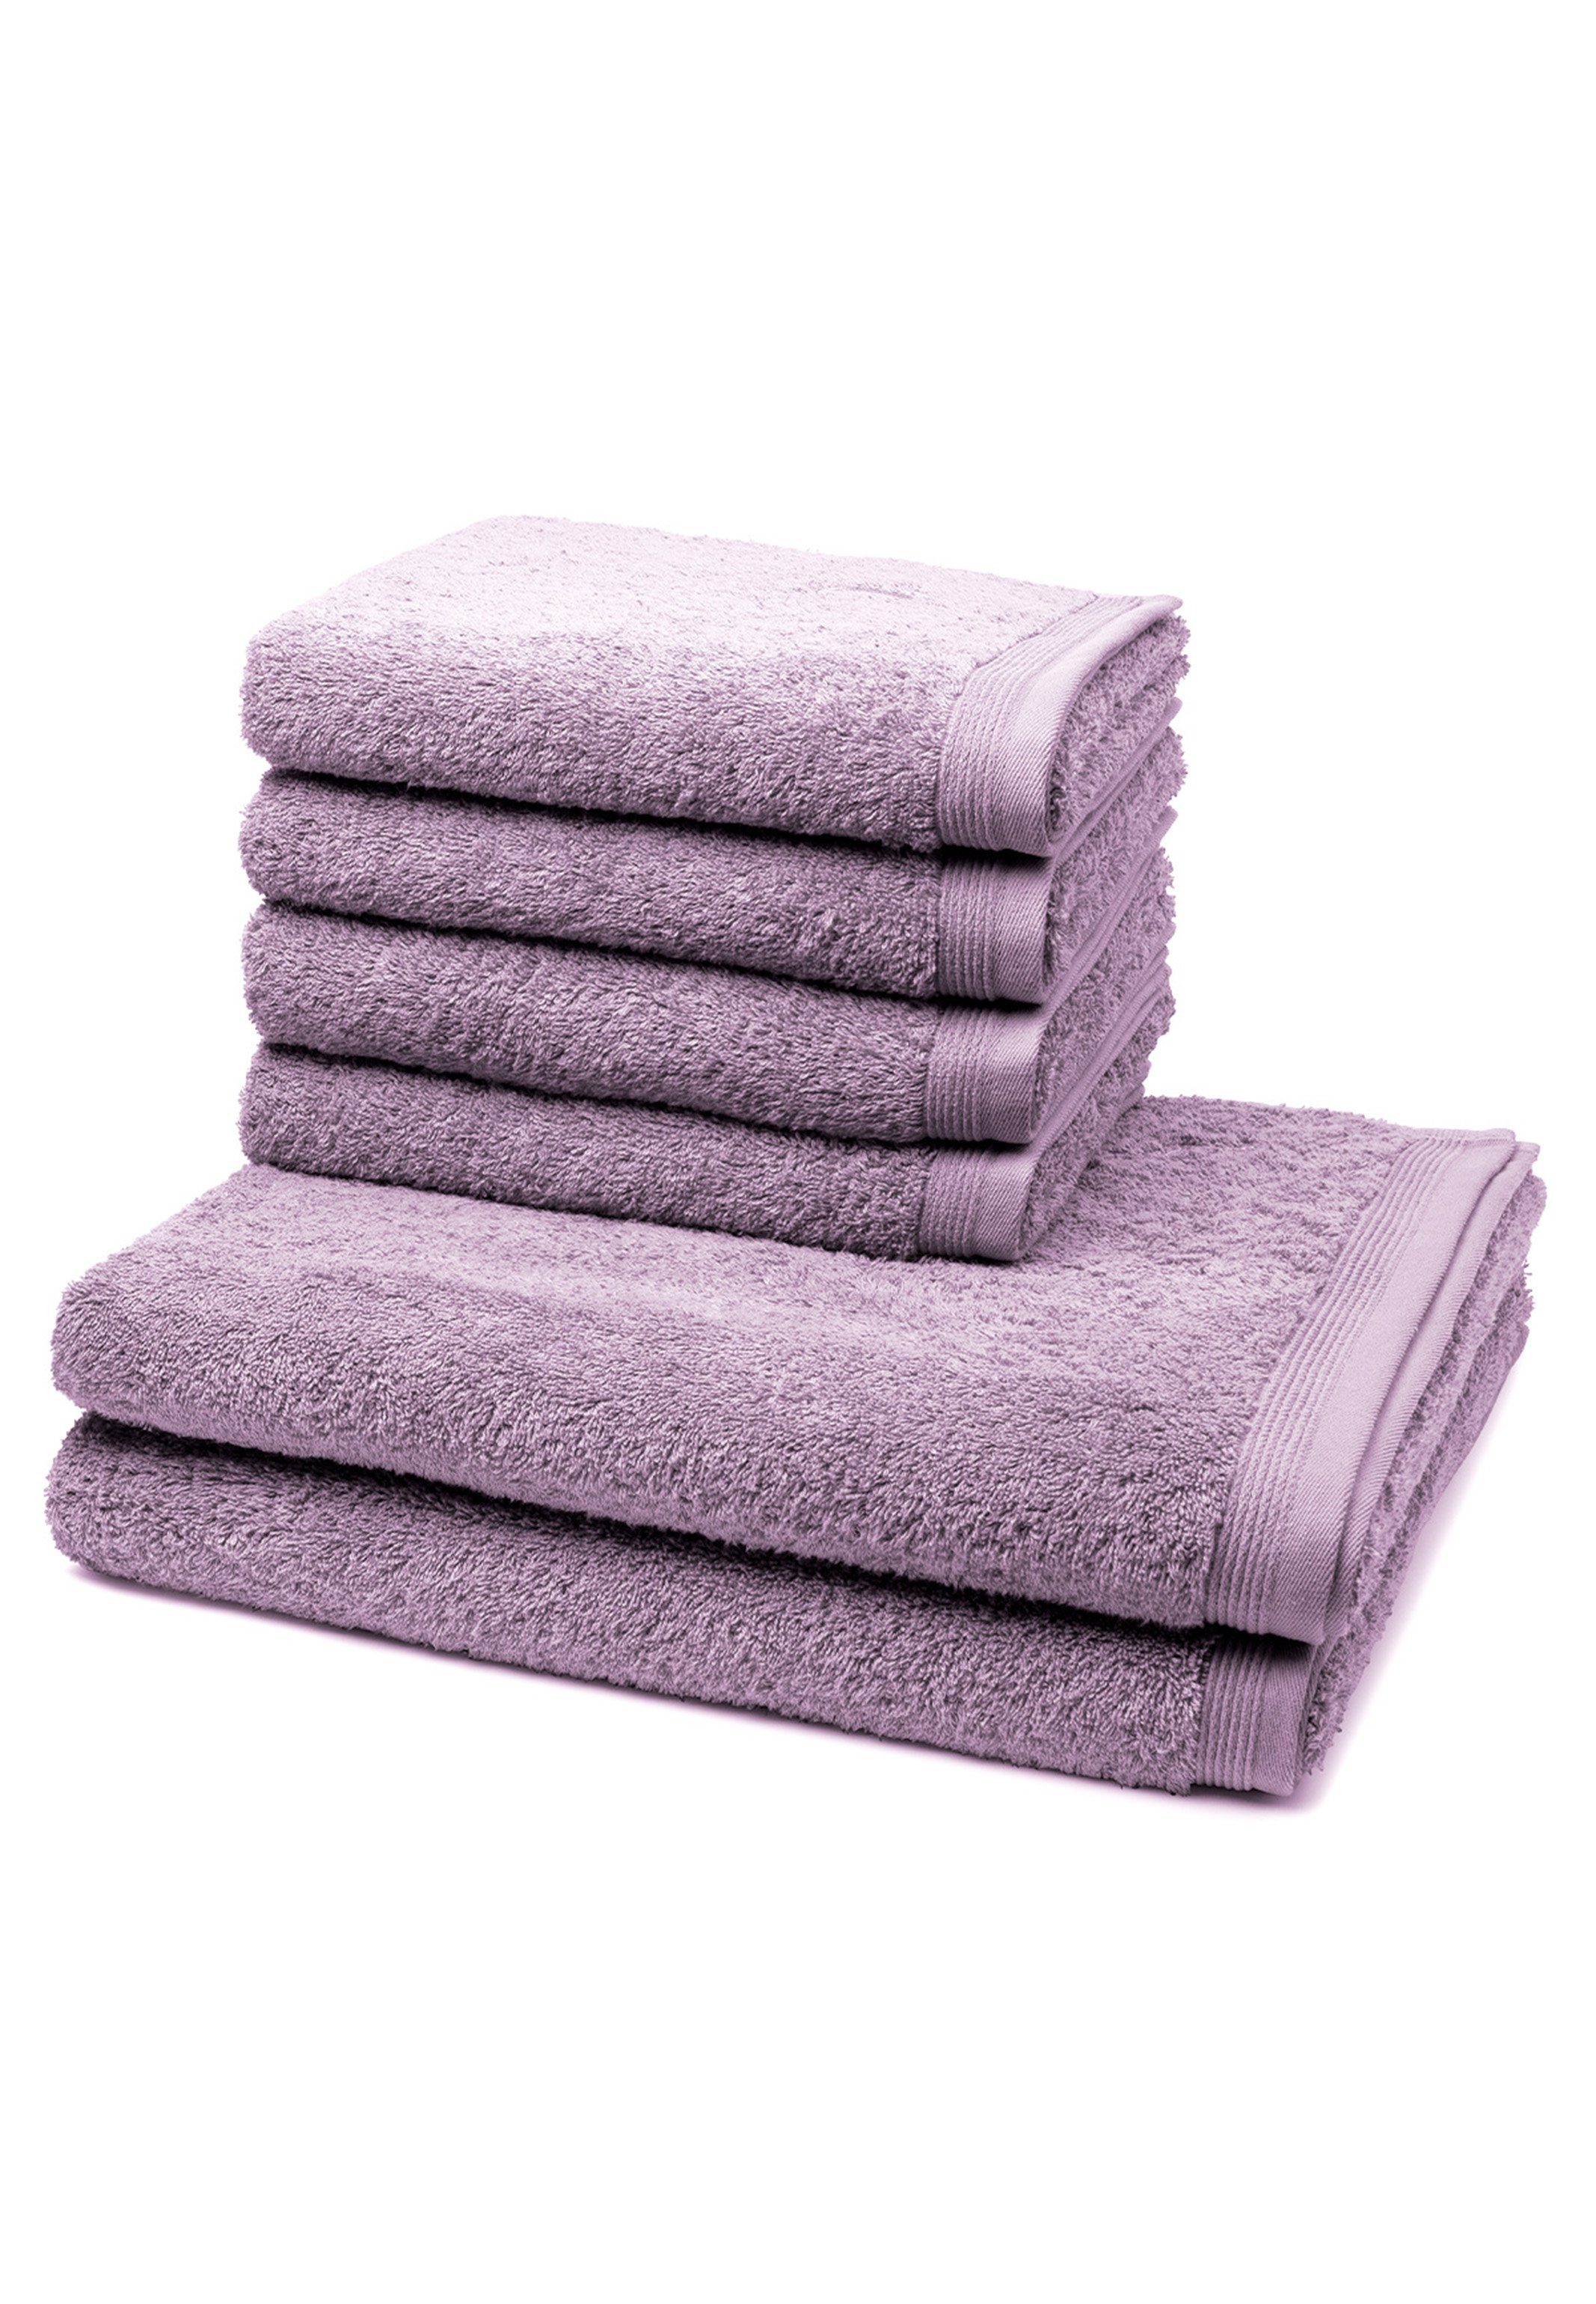 6-tlg), Set Handtuch Handtuch (Spar-Set, im Extraweiches Superwuschel, - Duschtuch X Set X 2 Möve 4 Walkfrottee, - Handtuch Baumwolle